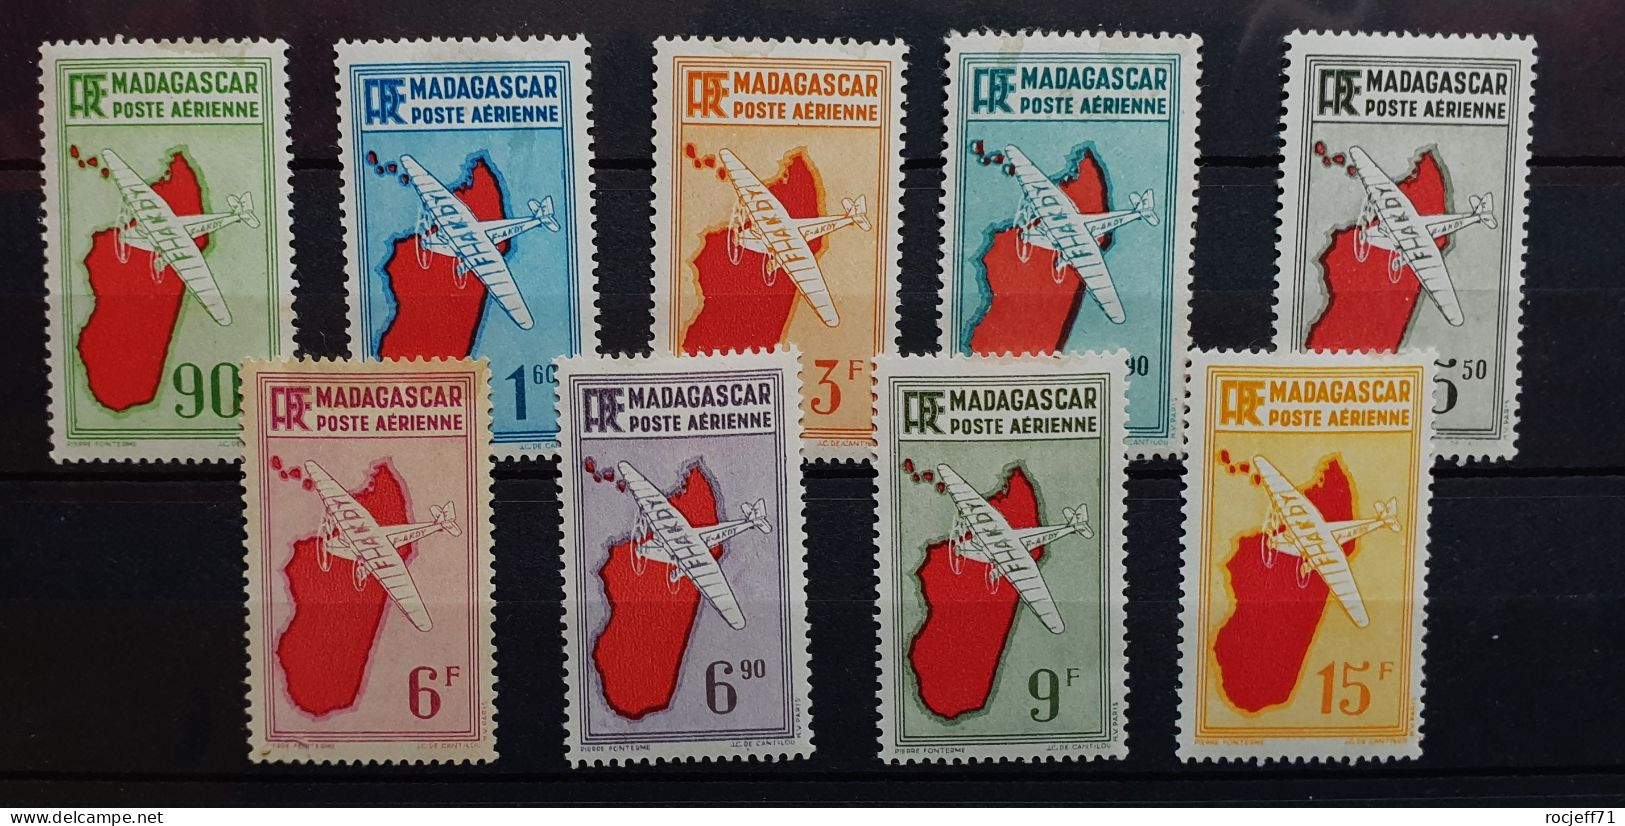 04 - 24 - Madagascar - Poste Aérienne N°16 à 24 * - MH - Série Complète - Luftpost